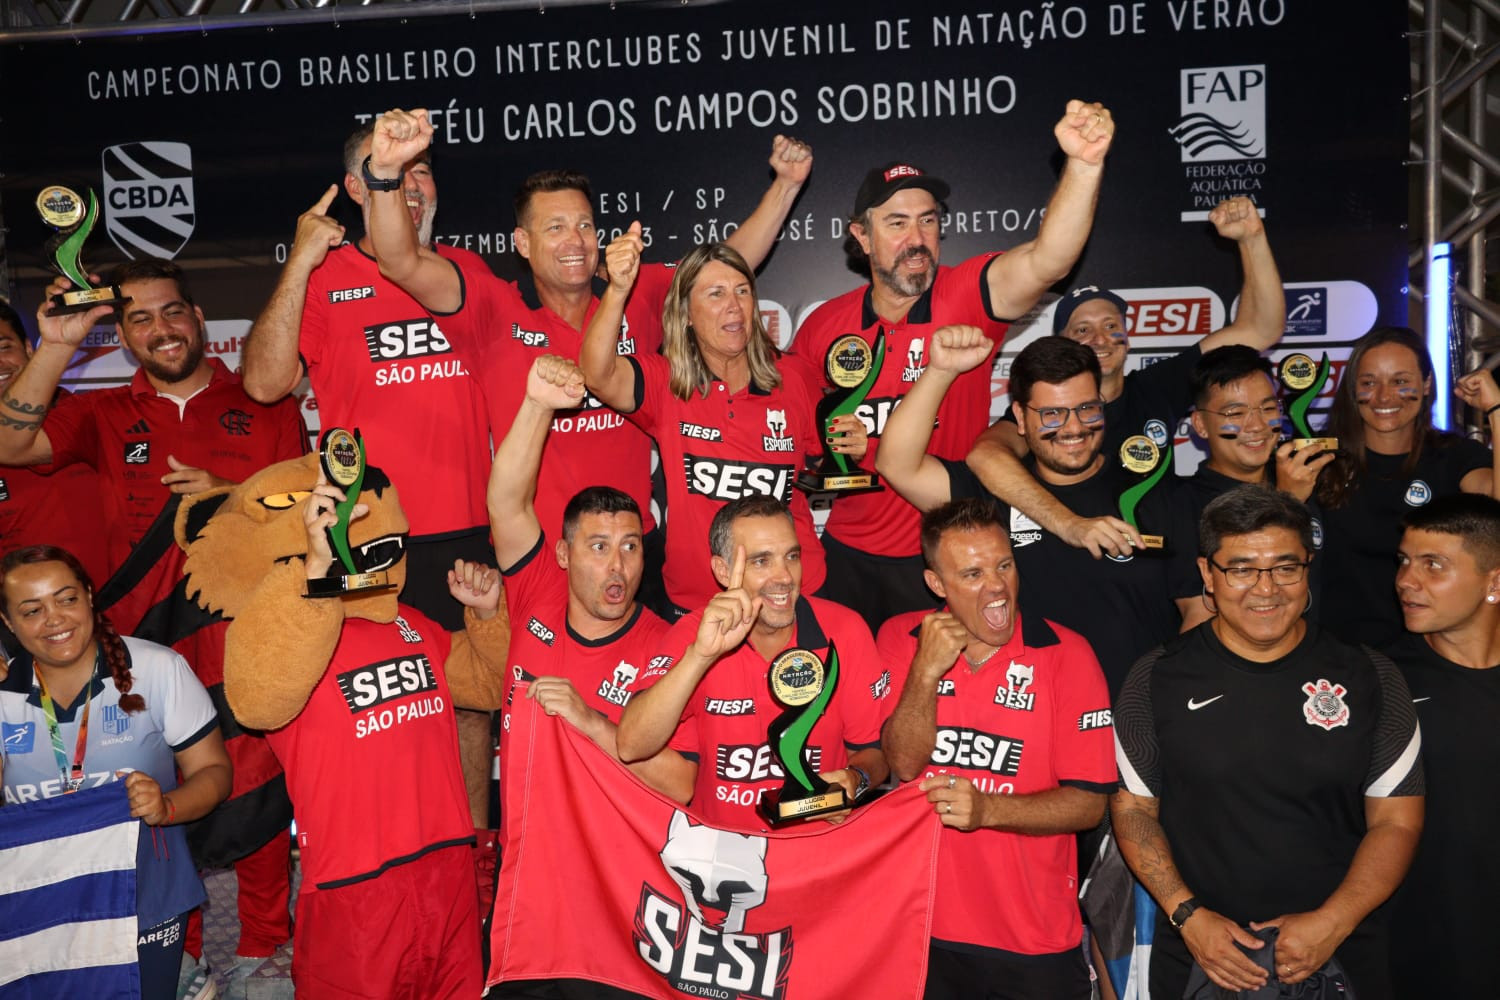 Sesi é campeão do Campeonato Brasileiro Juvenil de Natação de Verão